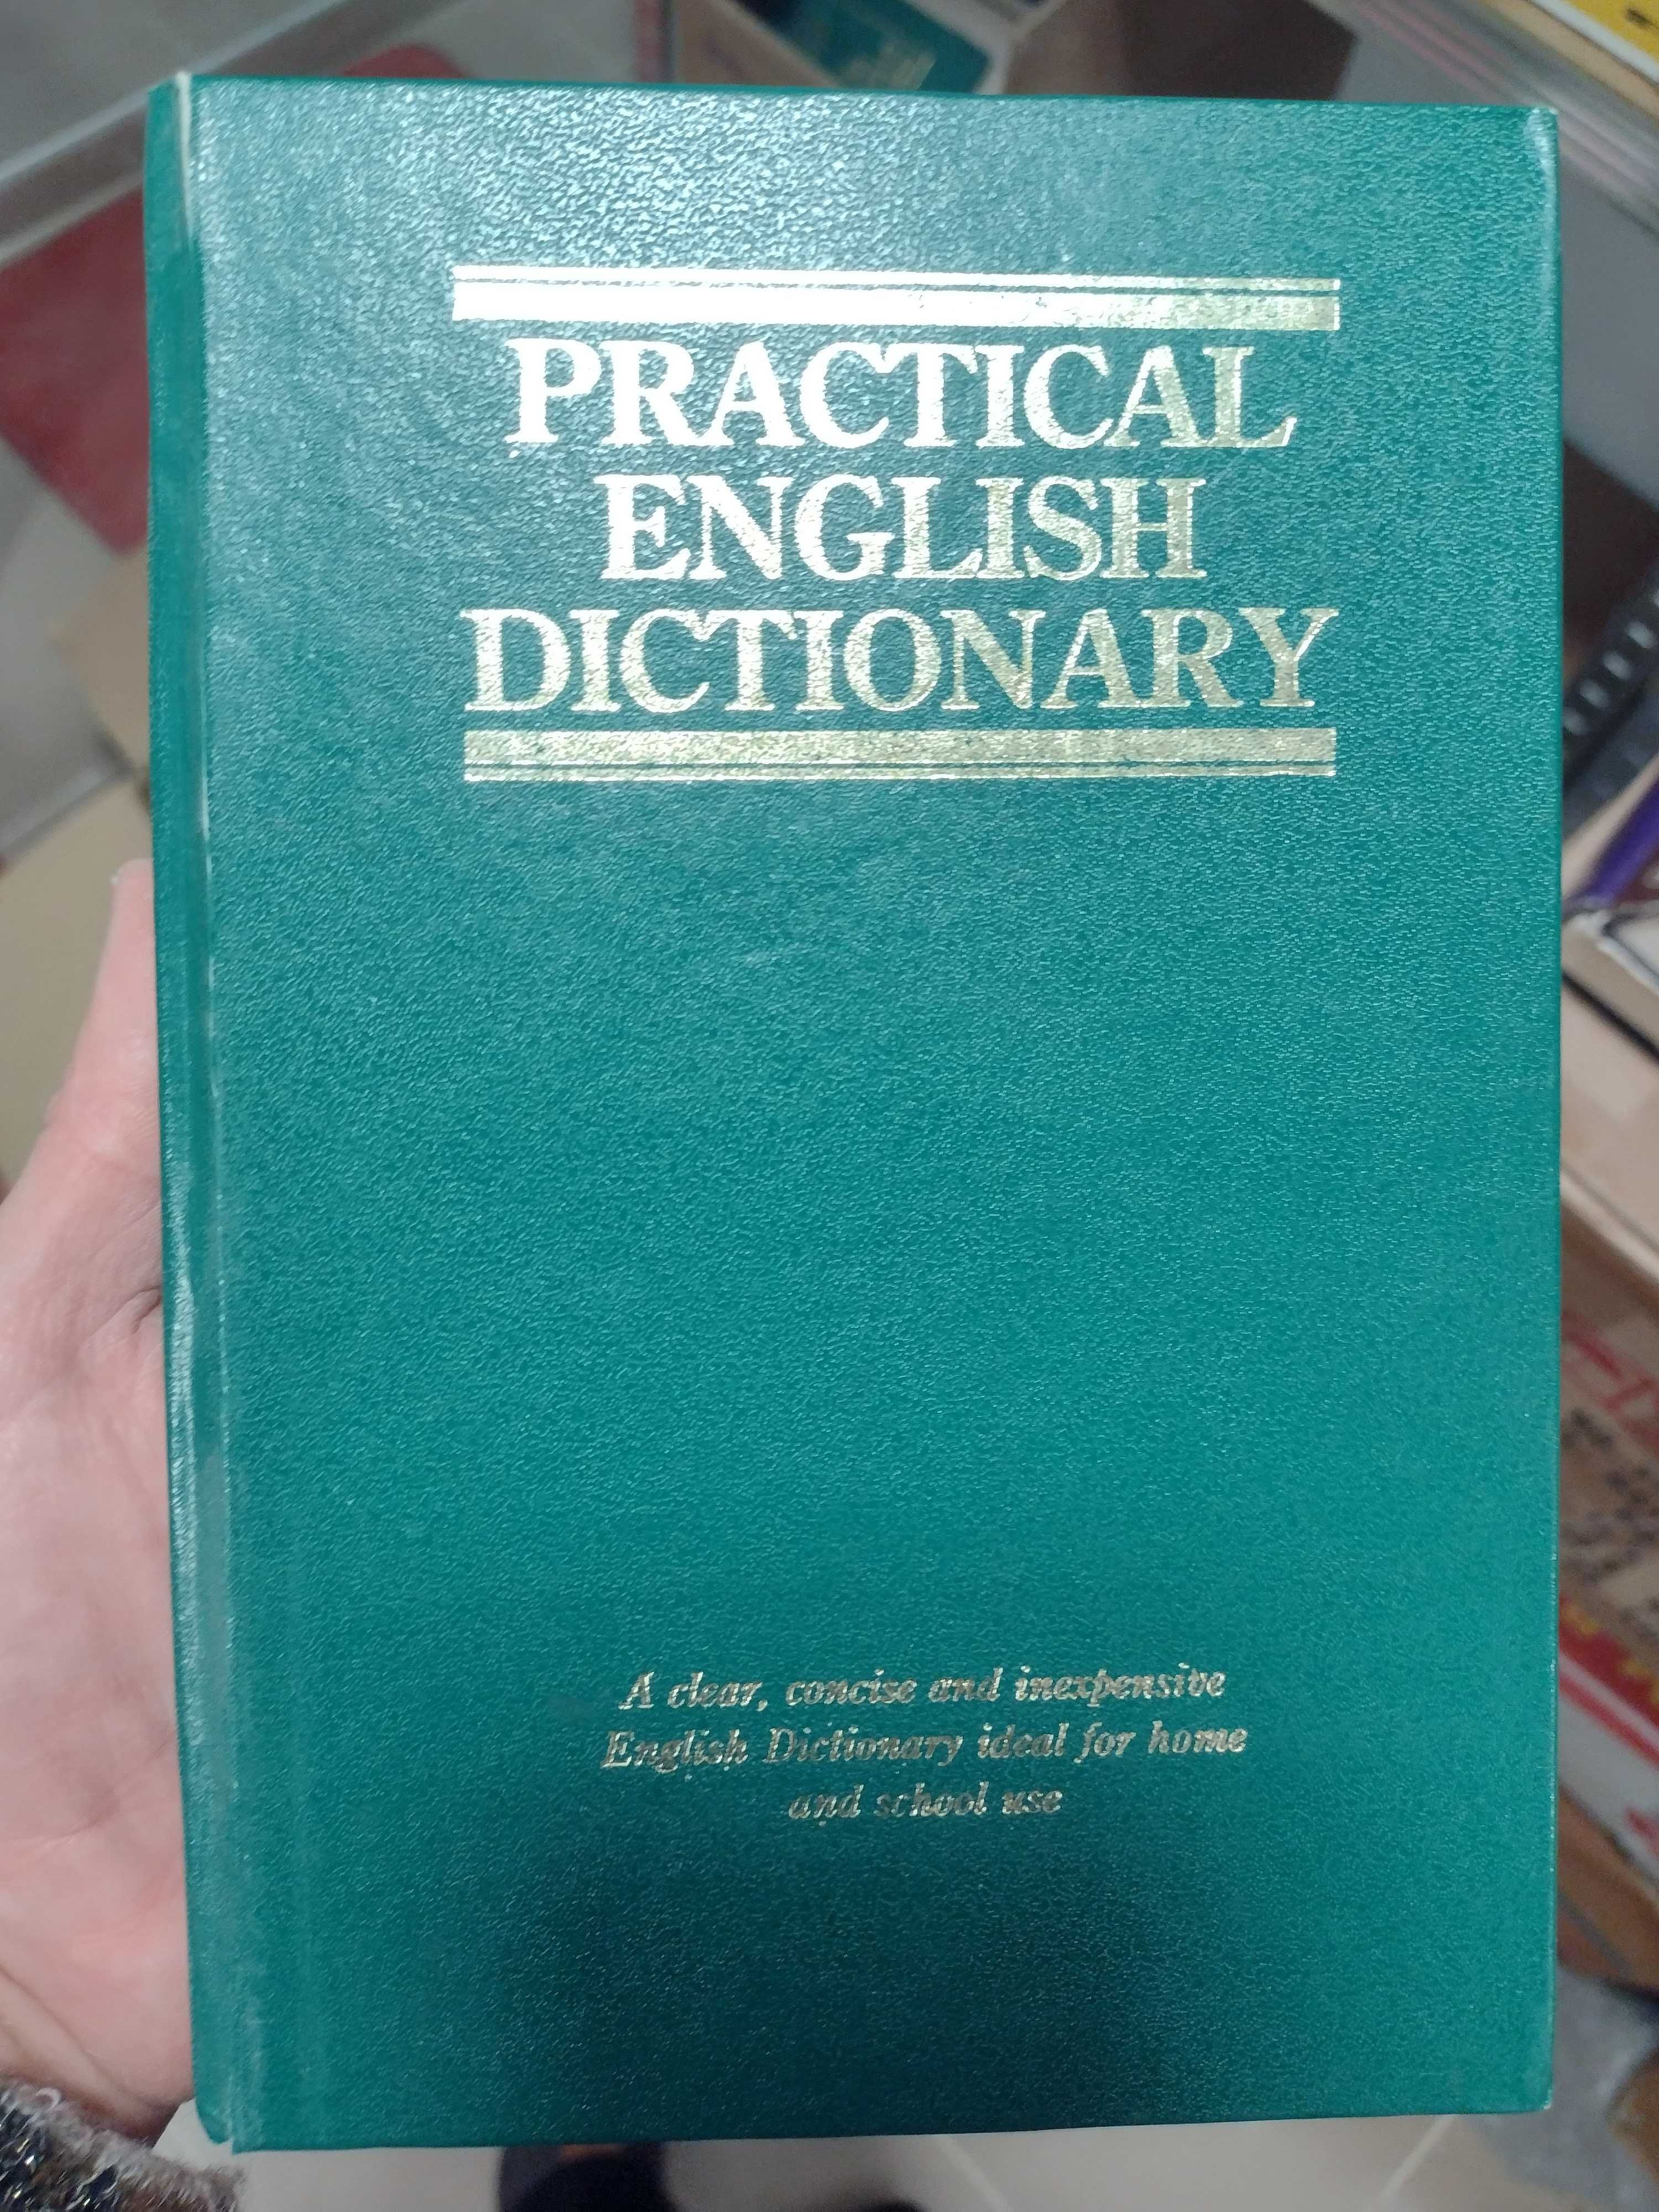 Речници: персидски, руски, латински, гръцки, арабски, румънски и др.